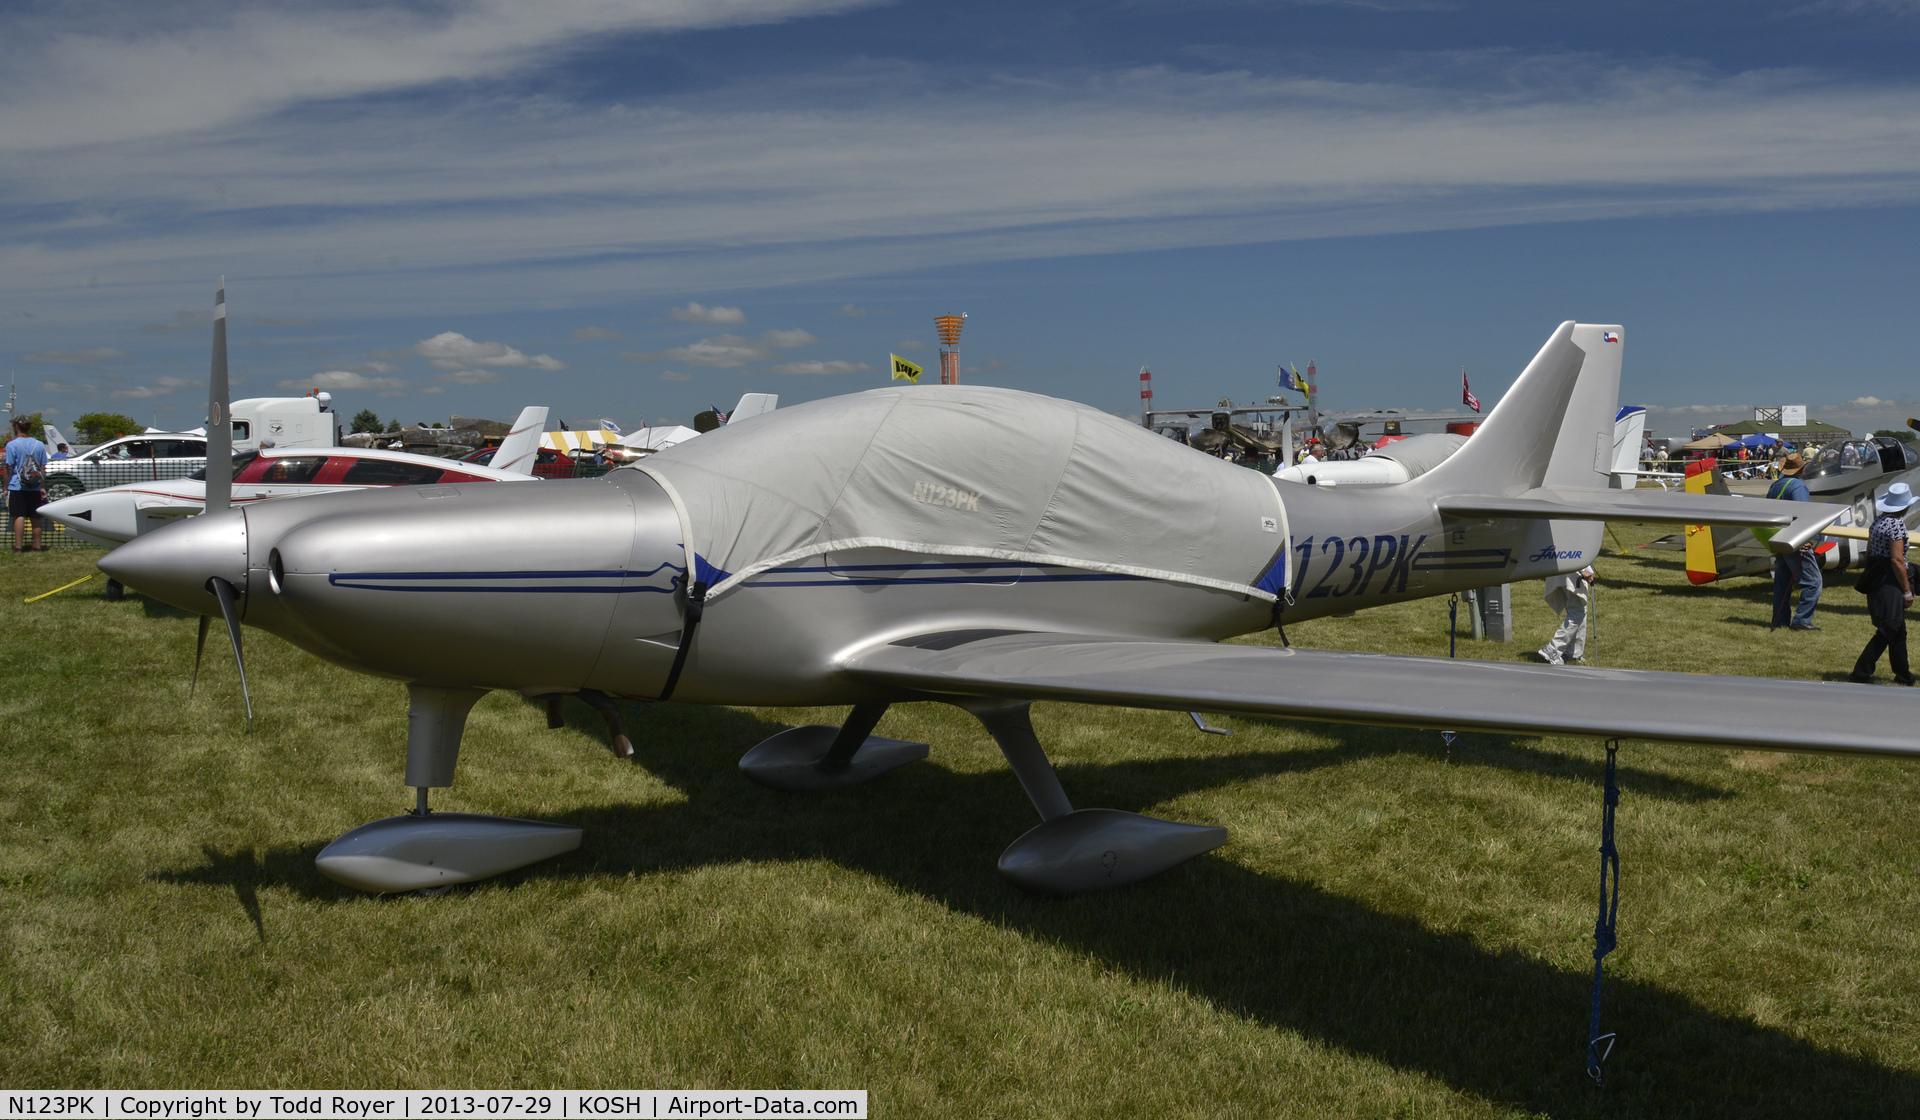 N123PK, 1998 Lancair ES C/N LRK-017, Airventure 2013